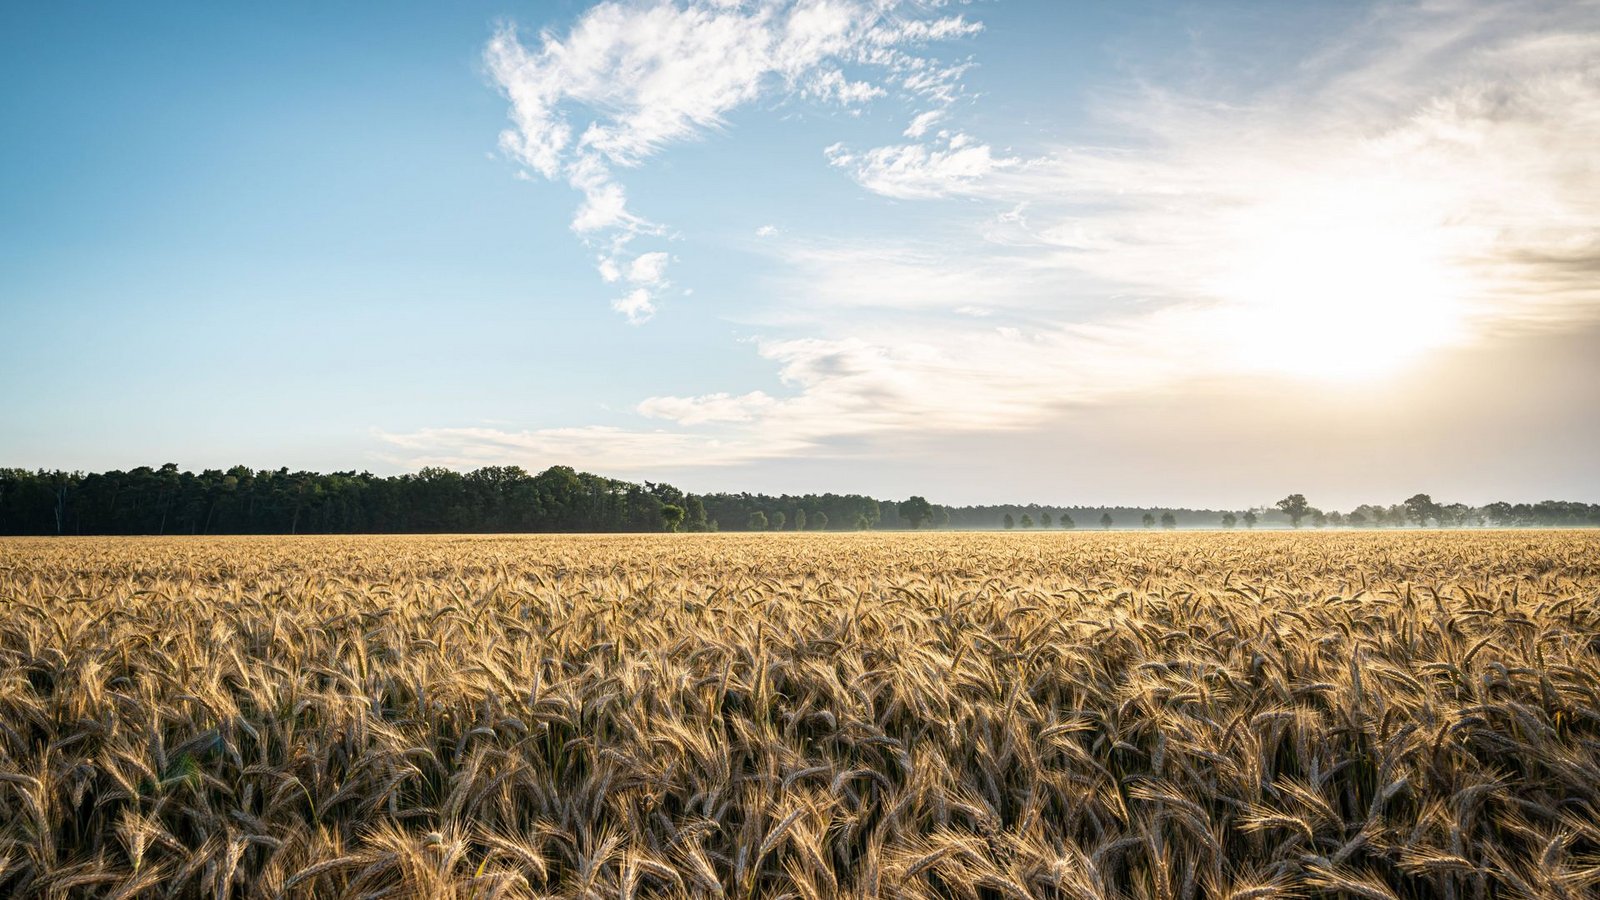 Weizen ist eine wichtige Grundlage zur Versorgung der Bevölkerung mit Nahrung. (Symbolbild)Foto: imago images/Countrypixel/via www.imago-images.de